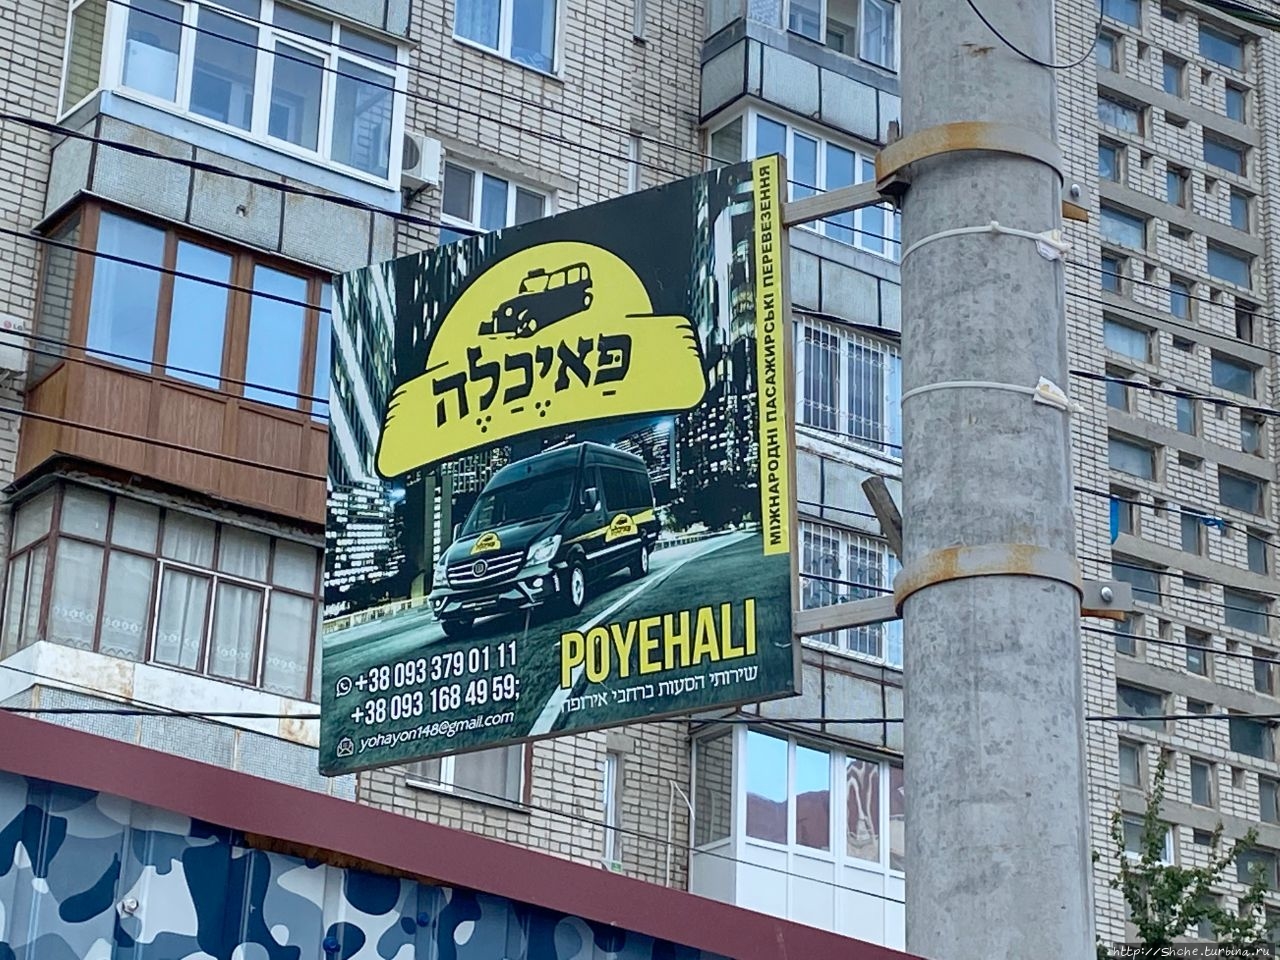 Еврейский квартал Умань, Украина